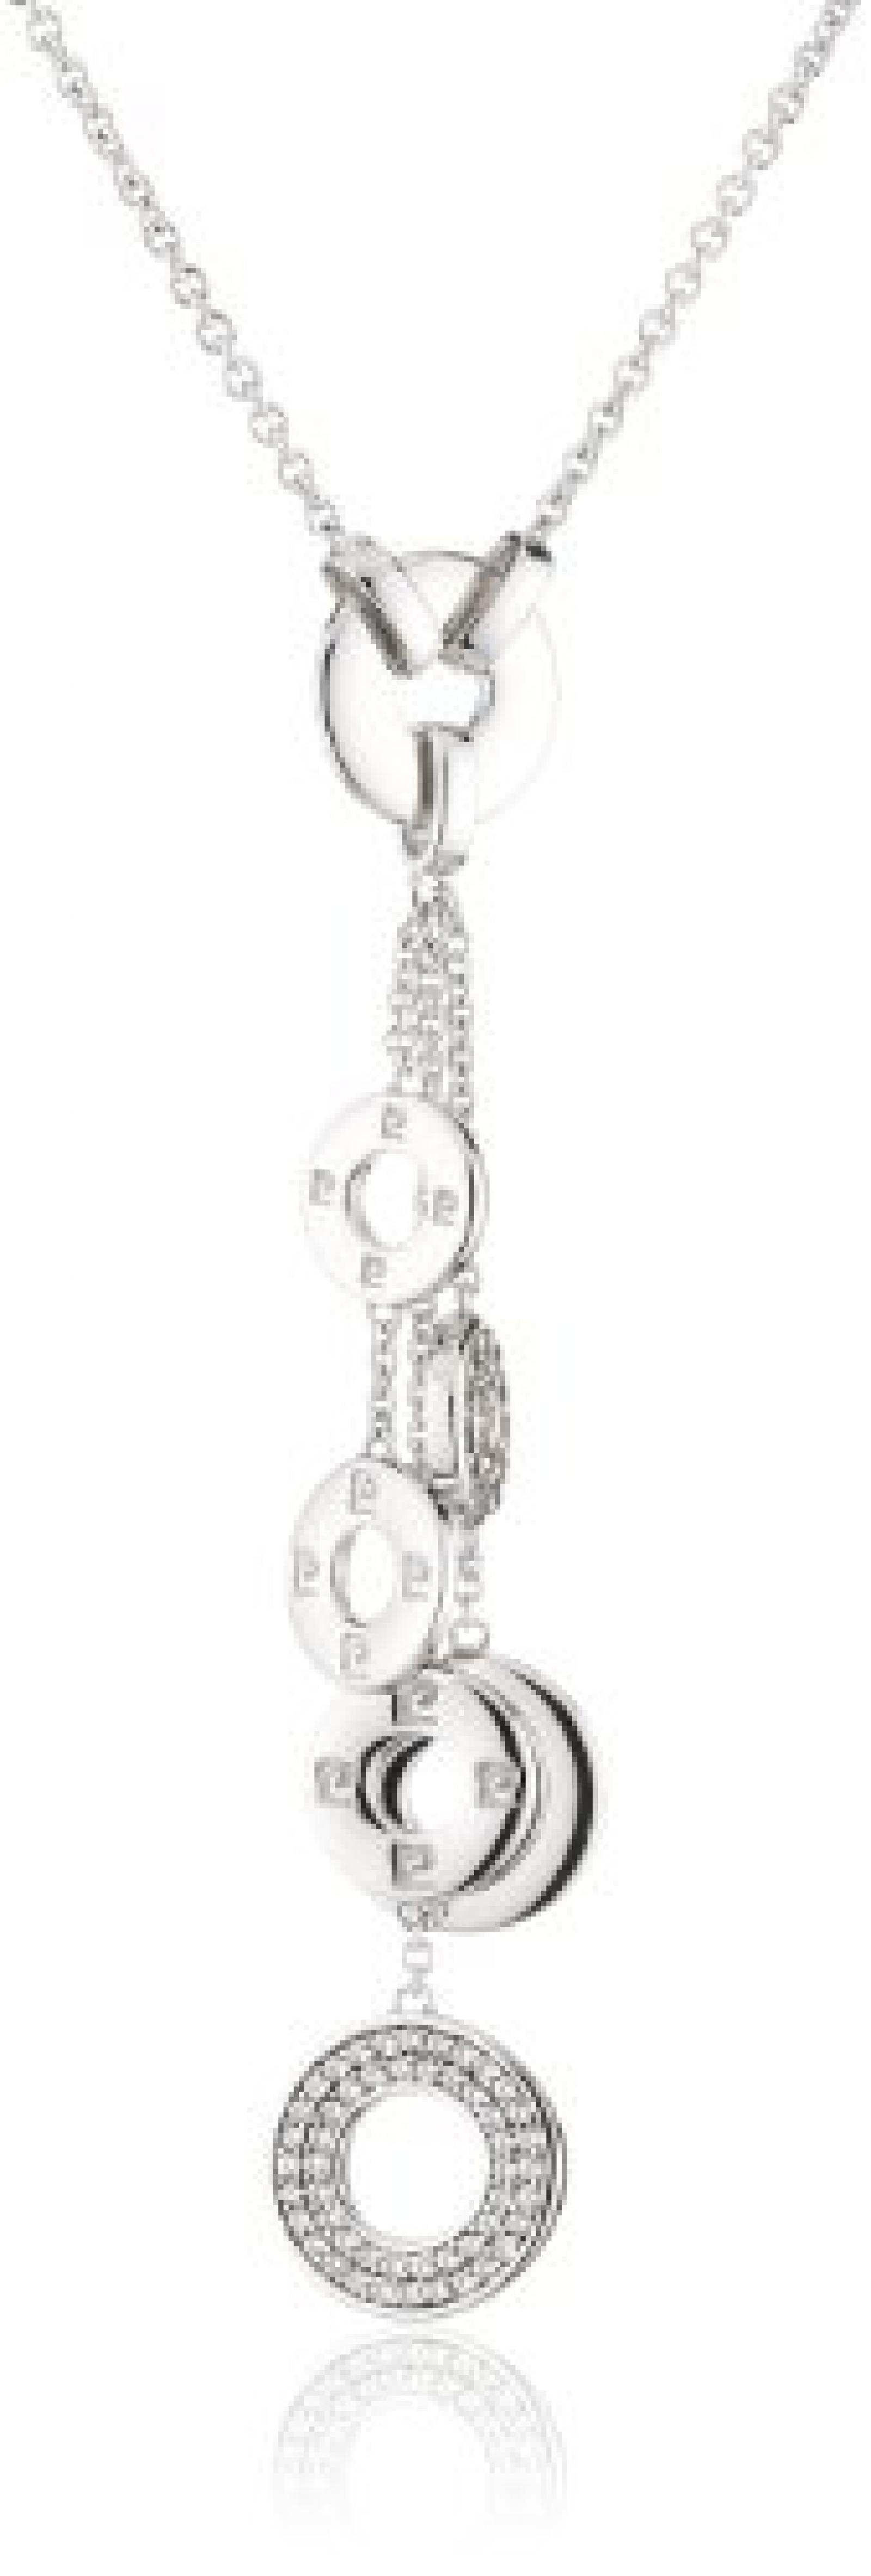 Pierre Cardin Damen Halskette 925 Sterling Silber rhodiniert Kristall Zirkonia Constellation 42 cm weiß PCNL90394A420 